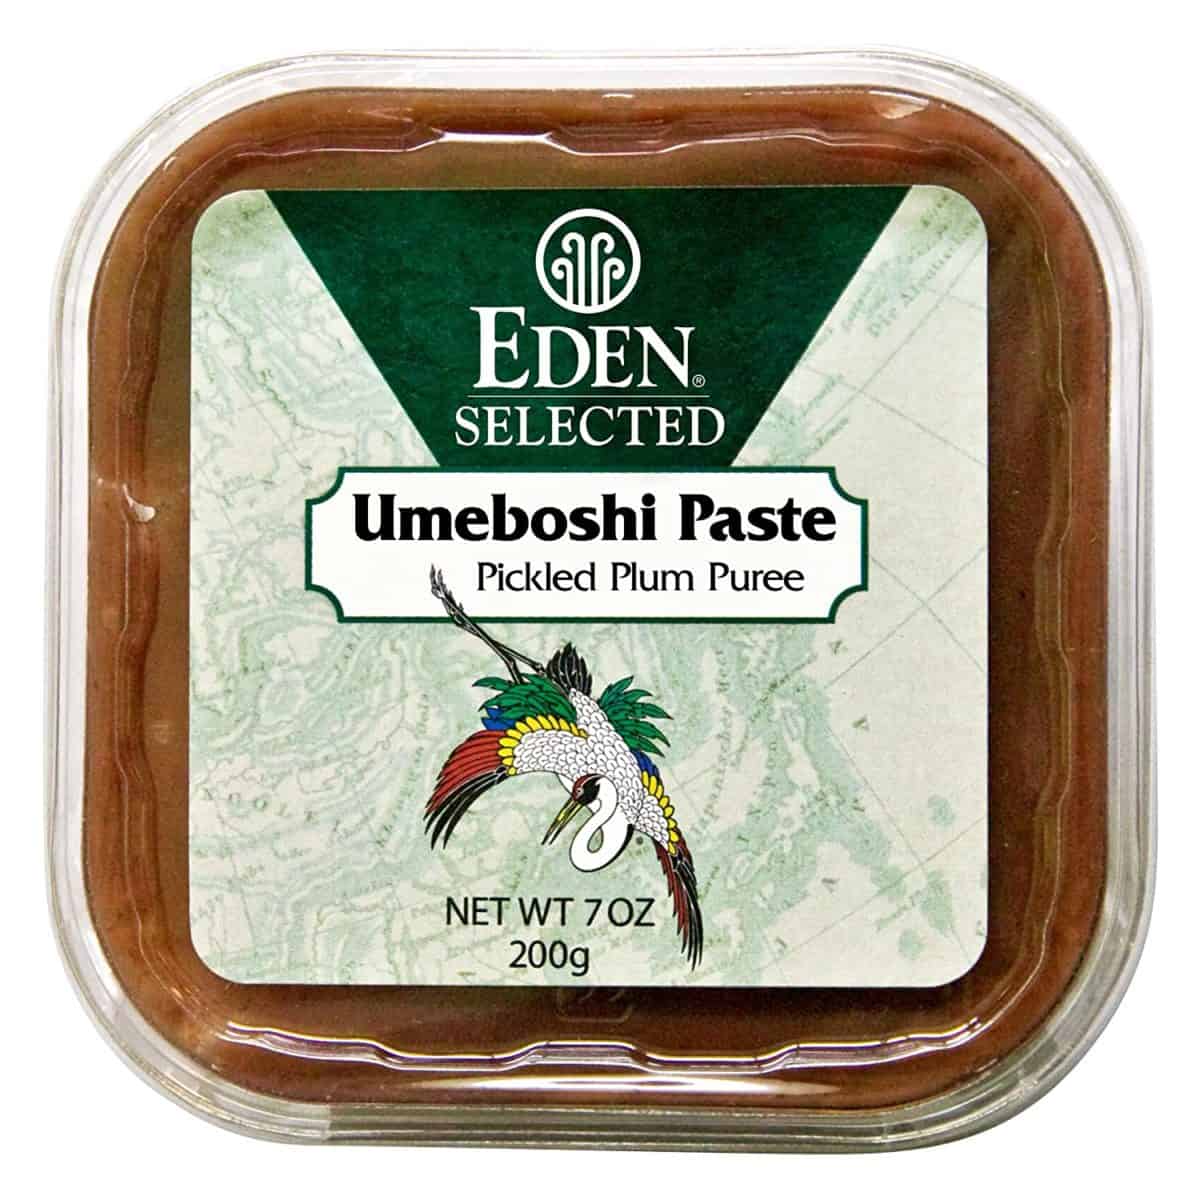 Eden umeboshi paste สำหรับทำอาหาร ซอส และน้ำสลัด